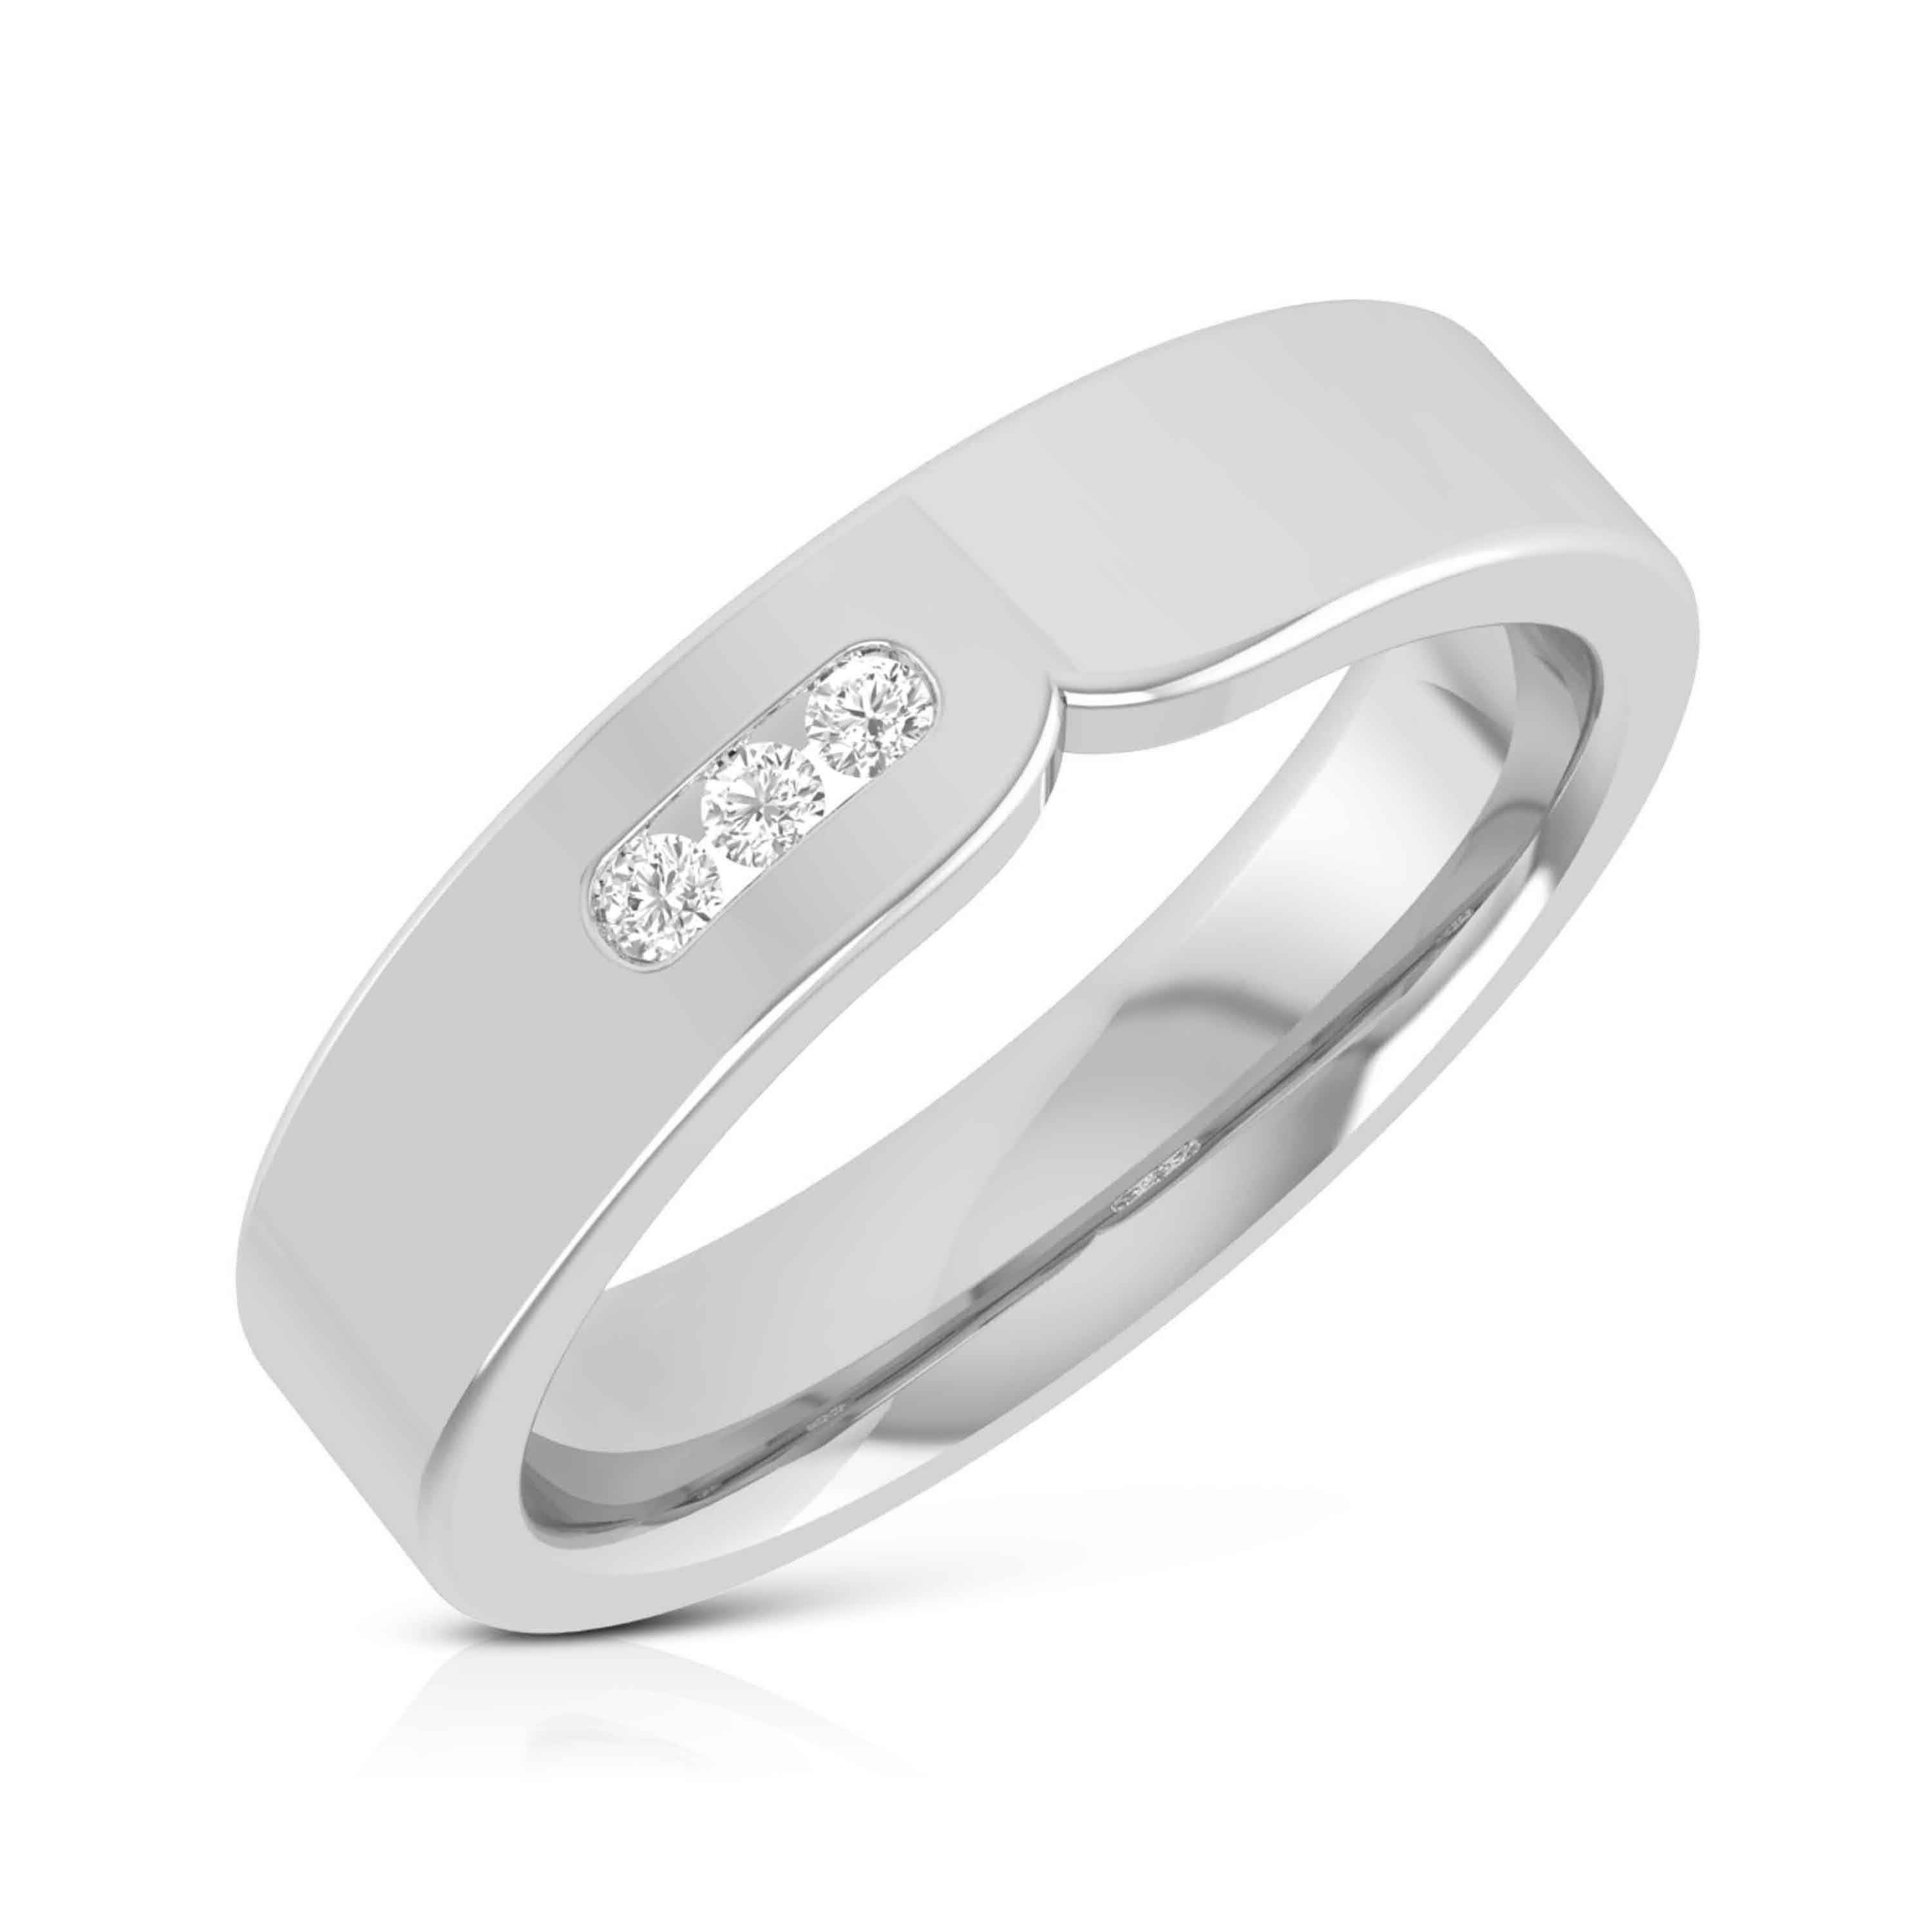 Mount Diamond Platinum Finger Ring For Men